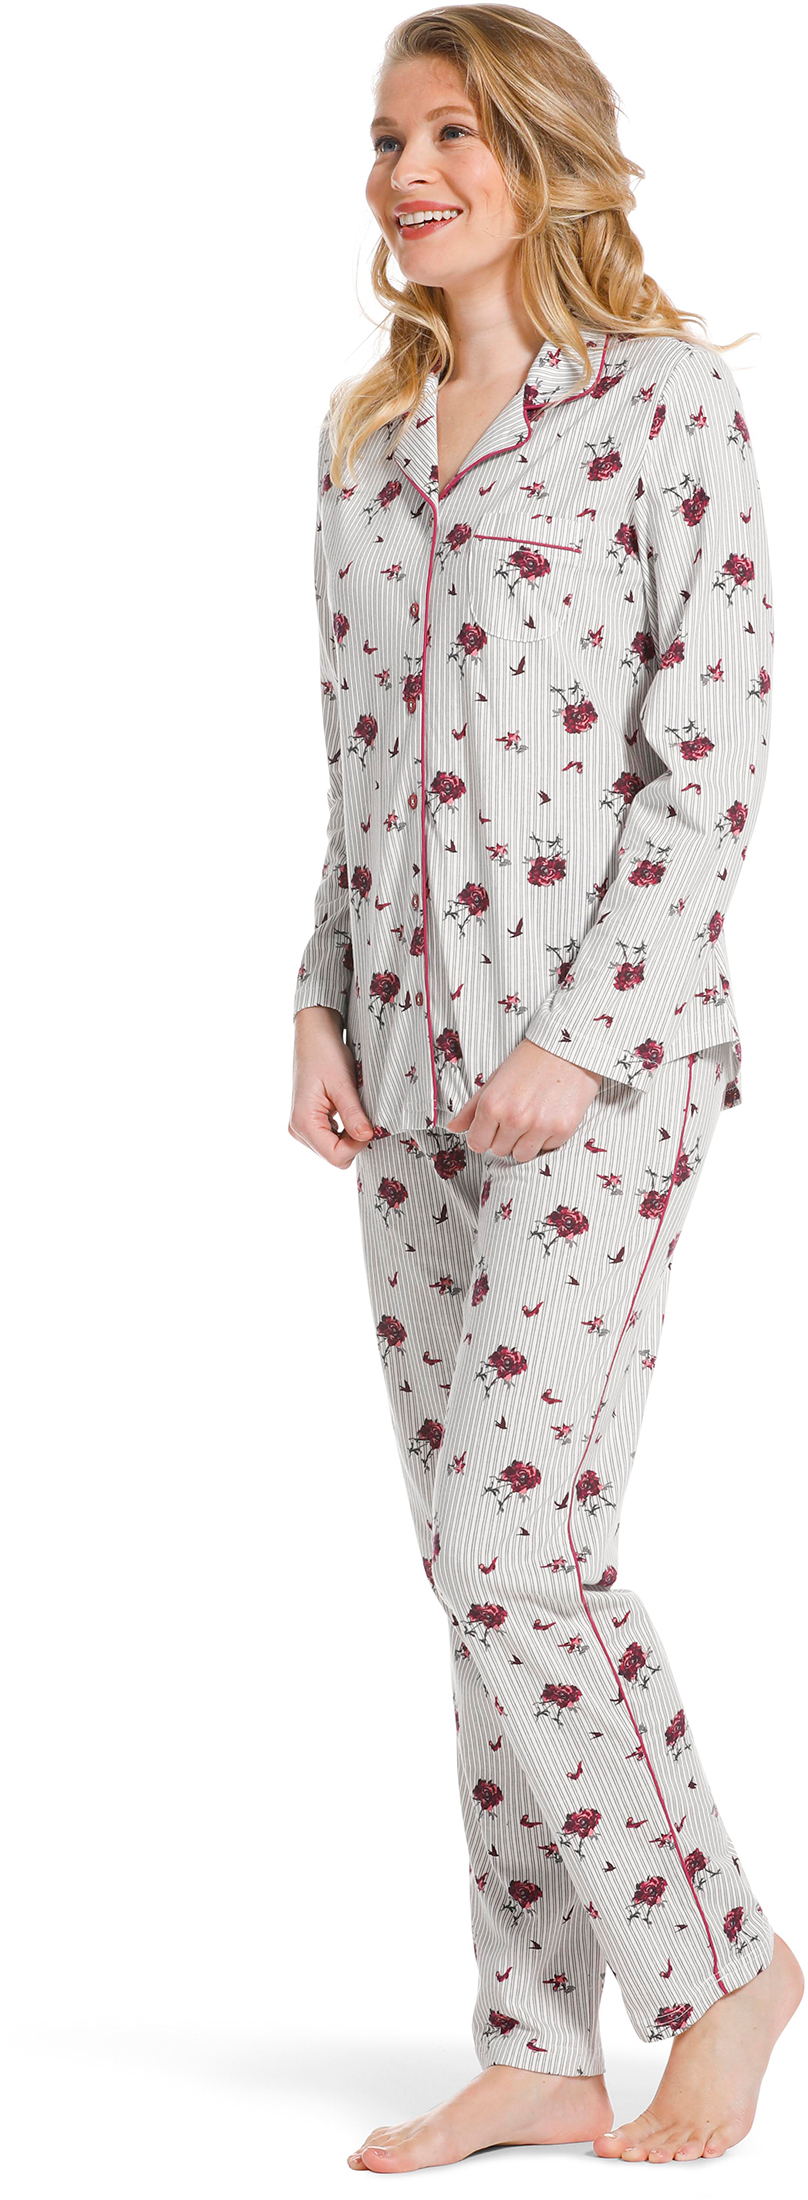 Pastunette doorknoop dames pyjama 20222 156 6 36